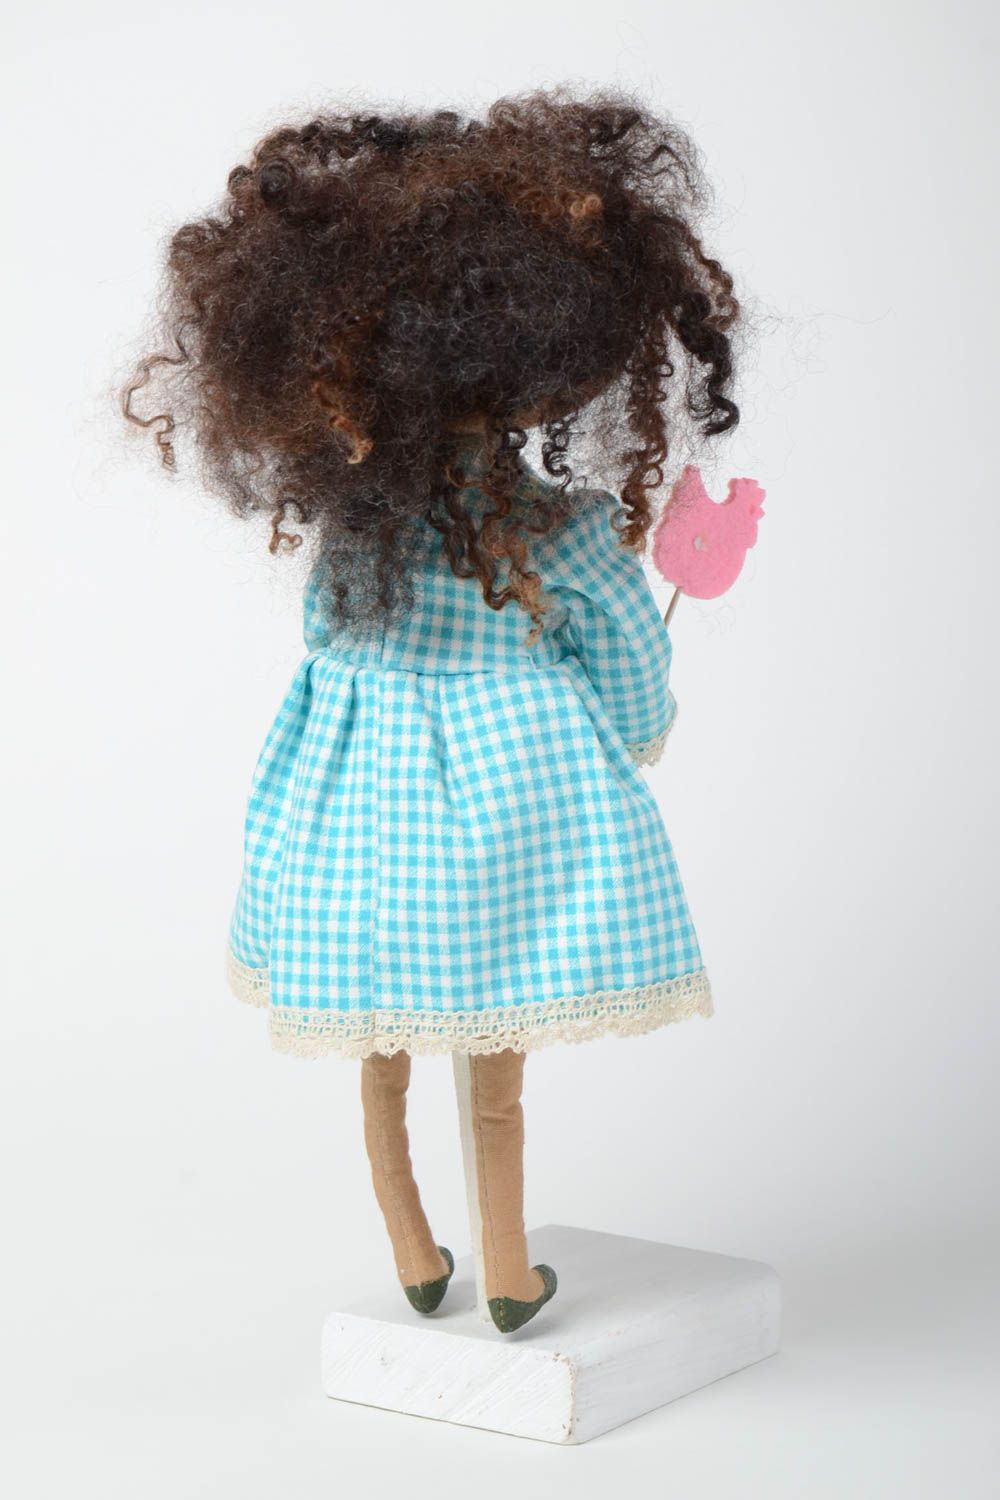 Тканевая мягкая игрушка ручной работы кукла ароматизированная кофе и ванилью фото 4